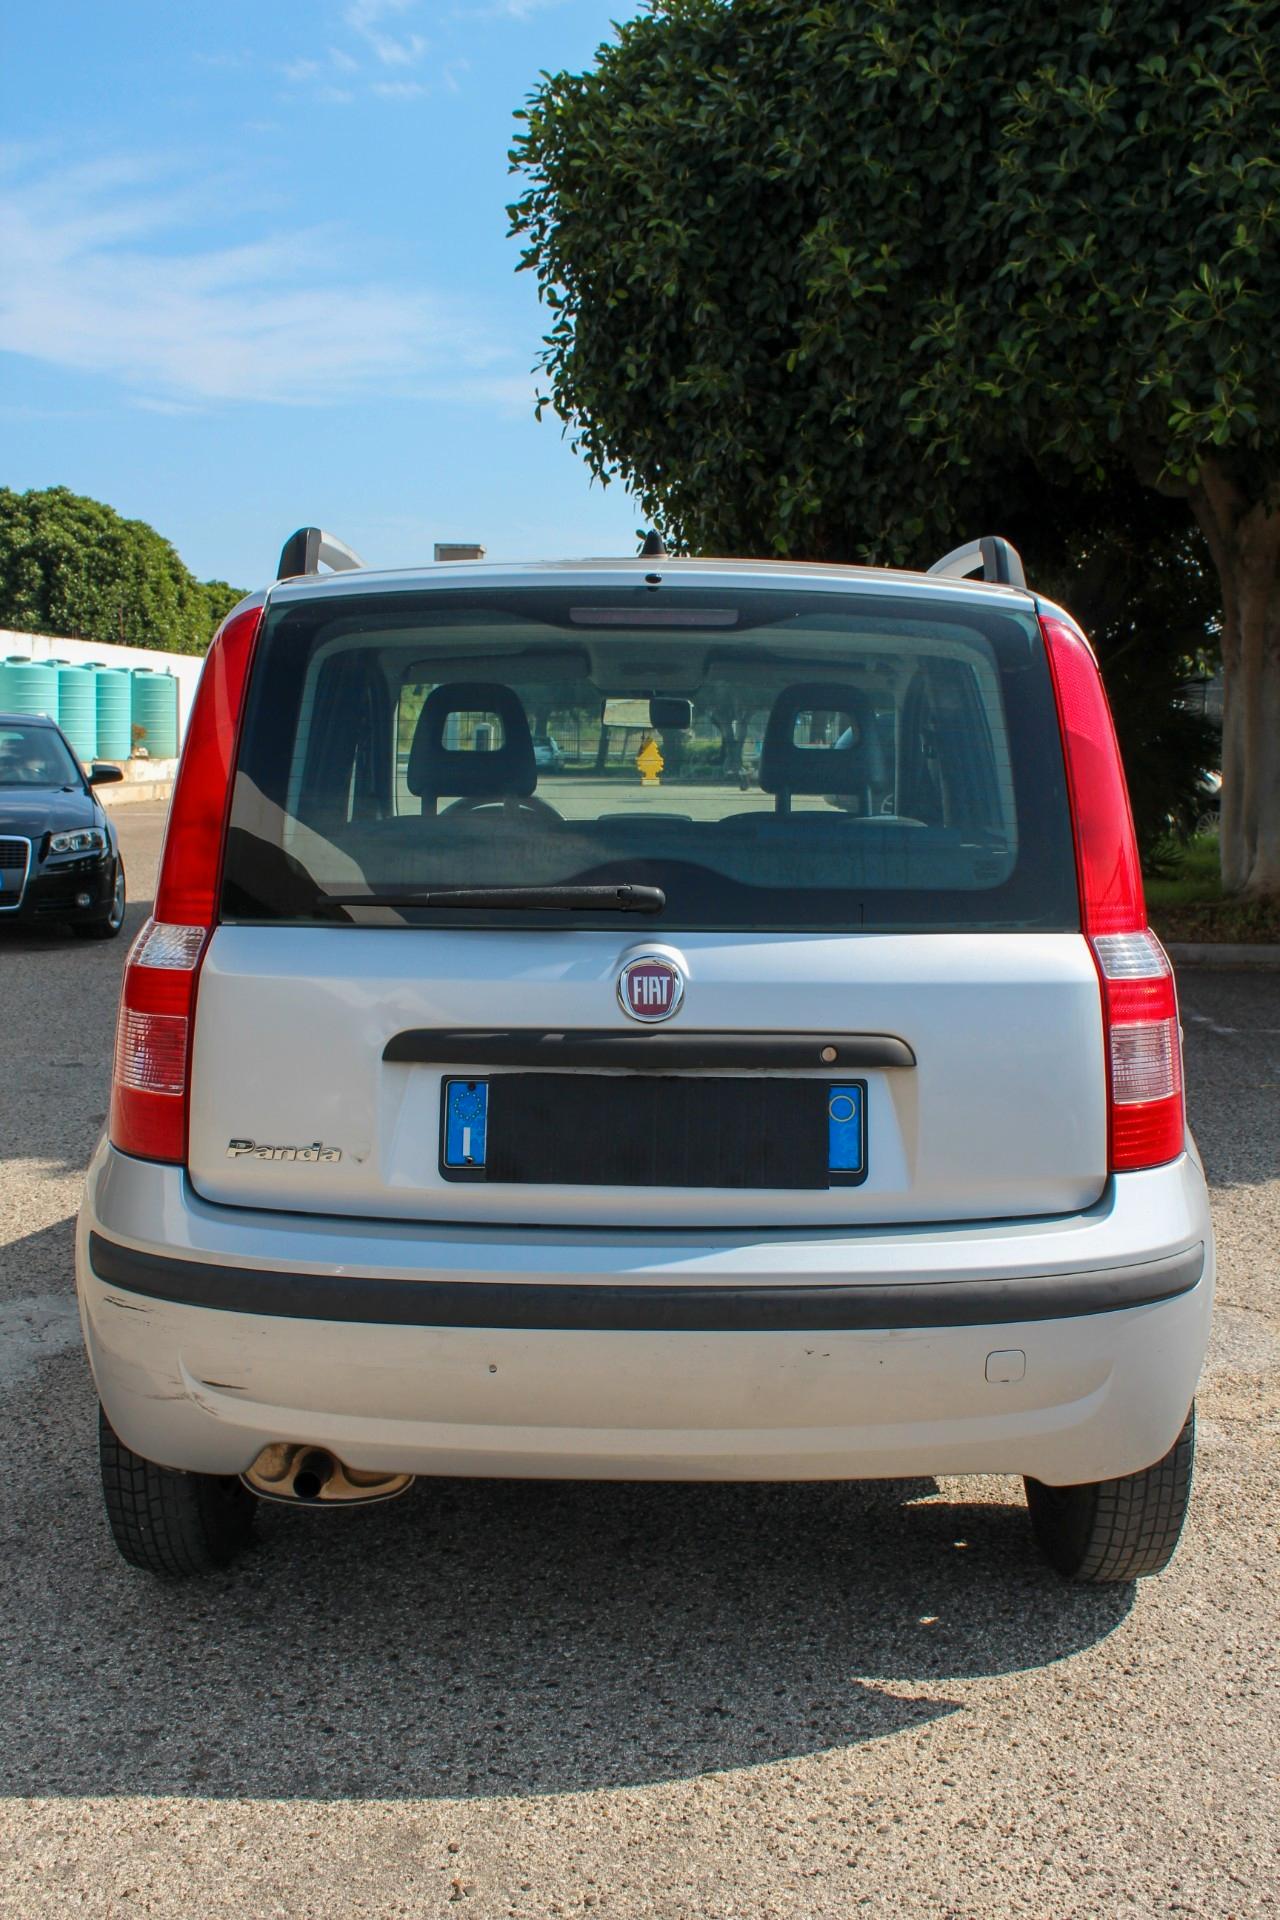 Fiat Panda 1.2 Dynamic